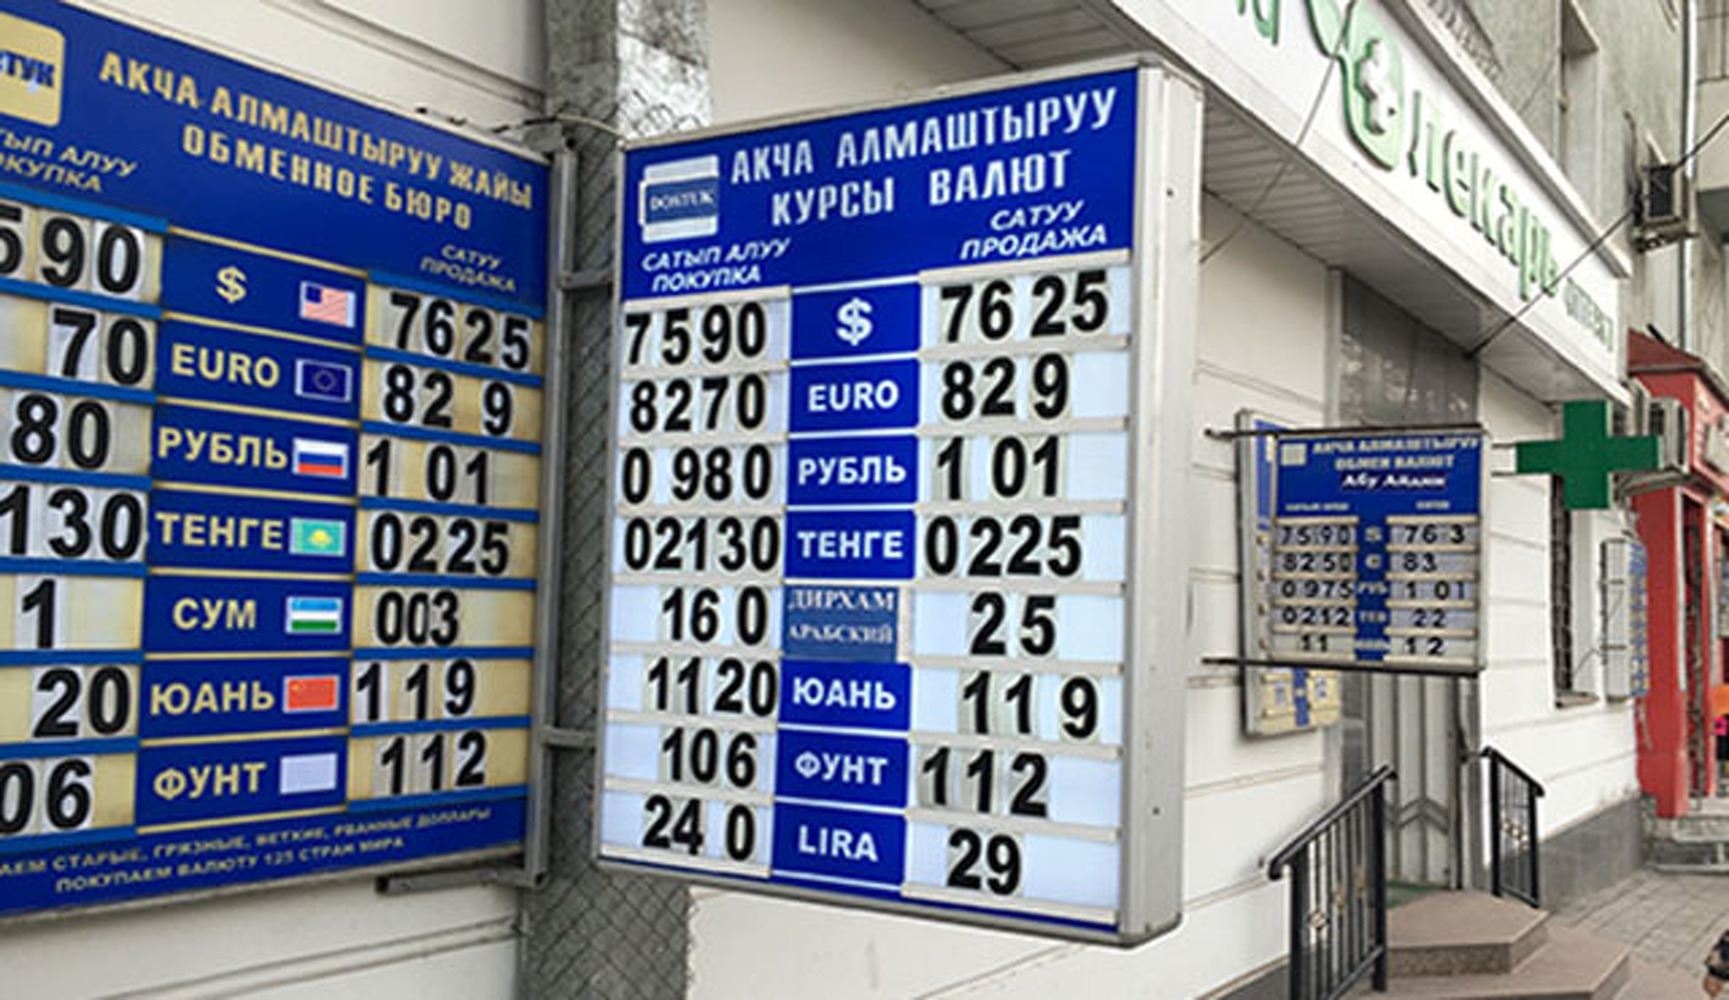 Курс рубля к сому сегодня в киргизии. Курс рубля. Курс валют. Обменный пунк Киргизии. Курс обмена валют в Бишкеке.